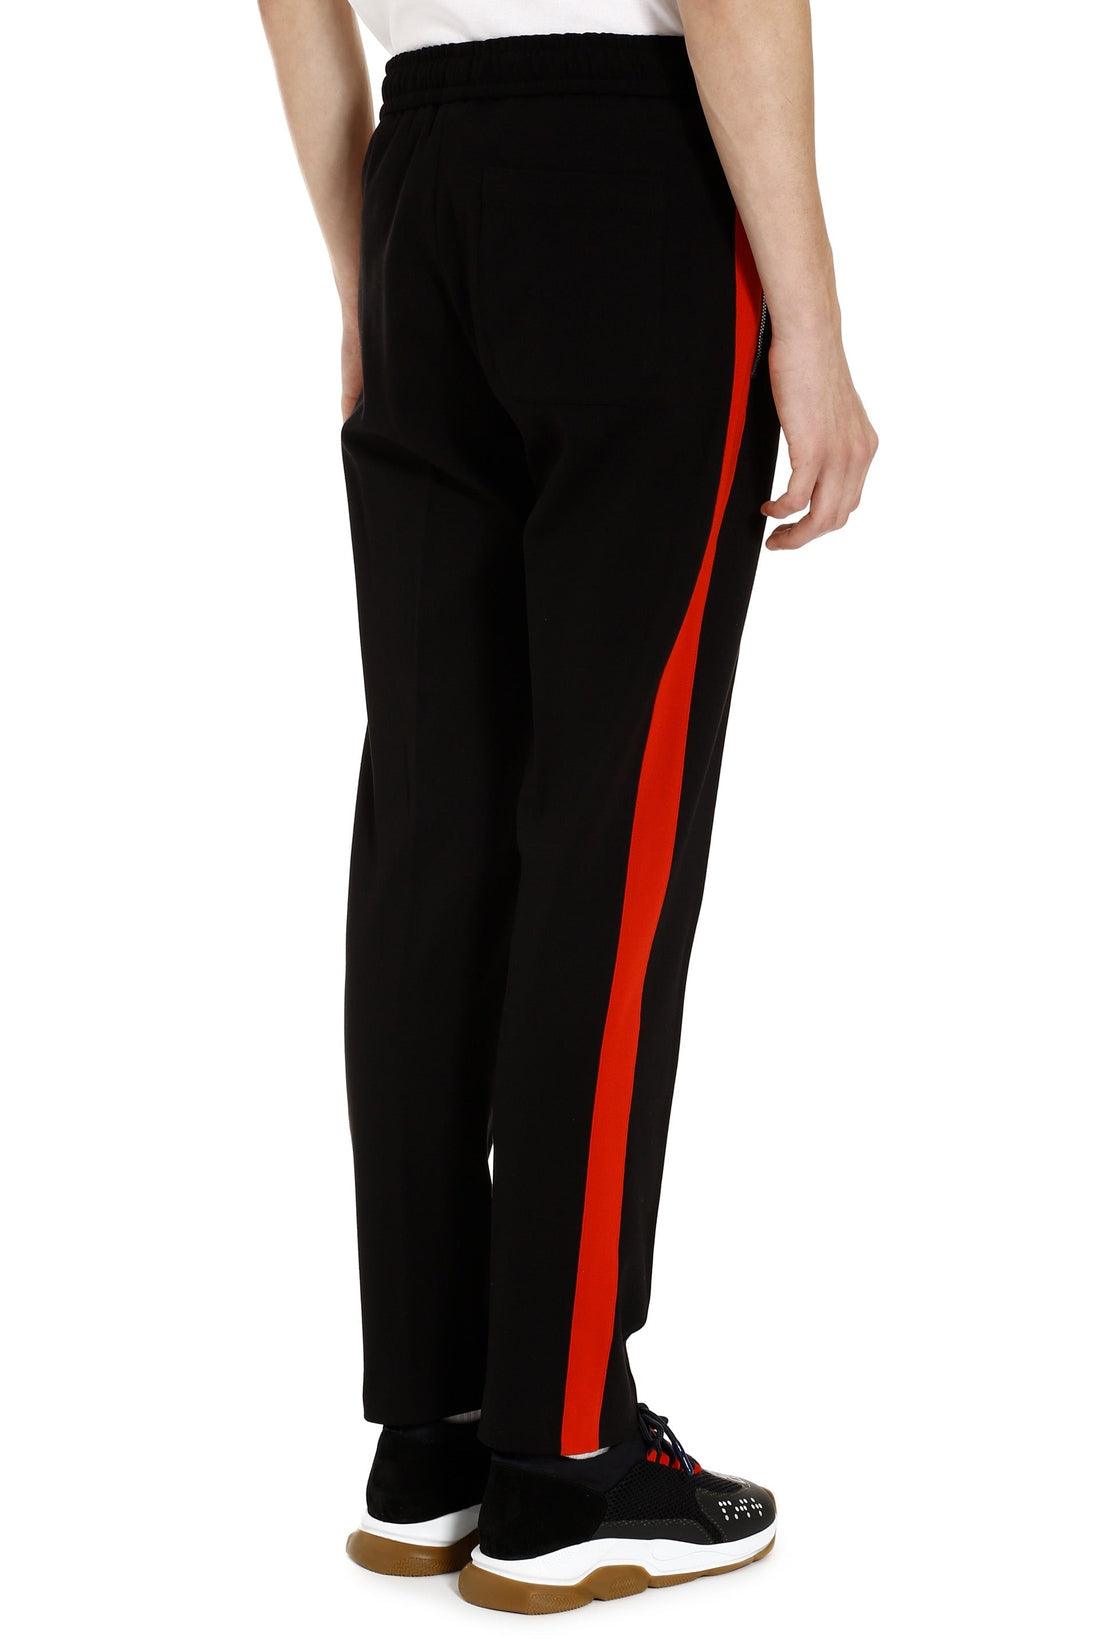 Versace-OUTLET-SALE-Drawstring waist track pants-ARCHIVIST